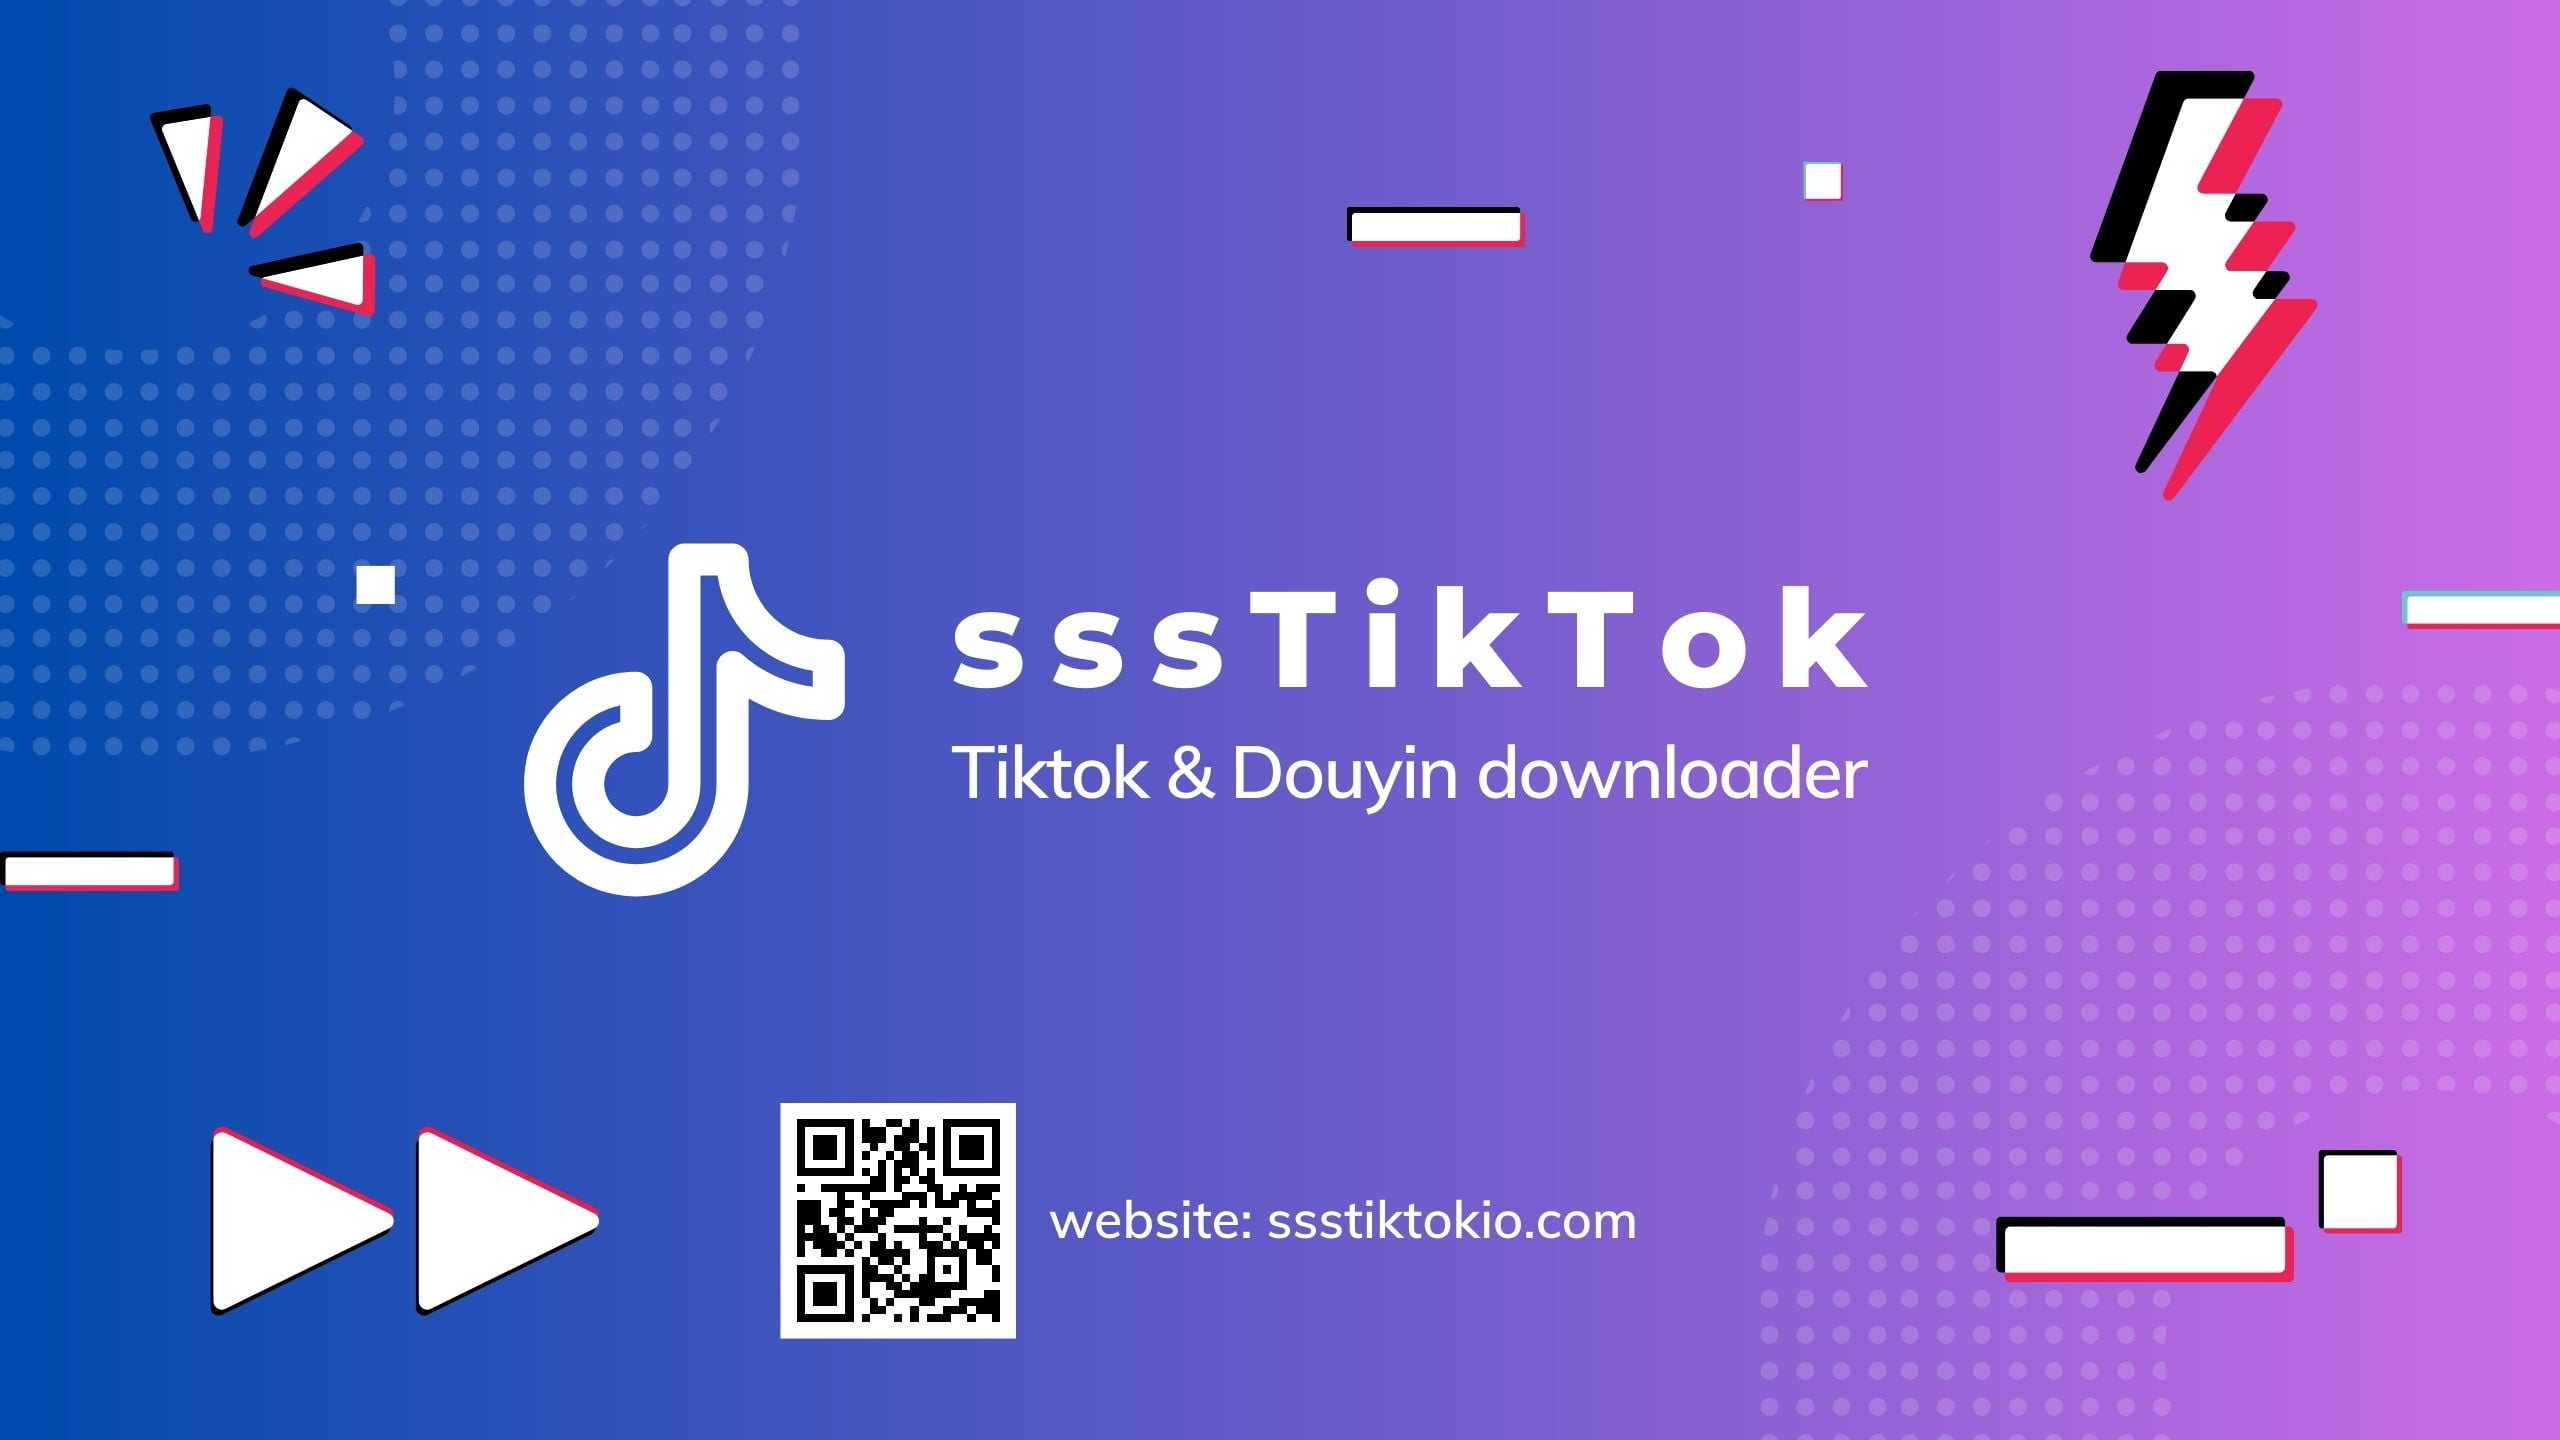 sssTiktok - Tiktok downloader - Filigransız Tiktok Video Indir